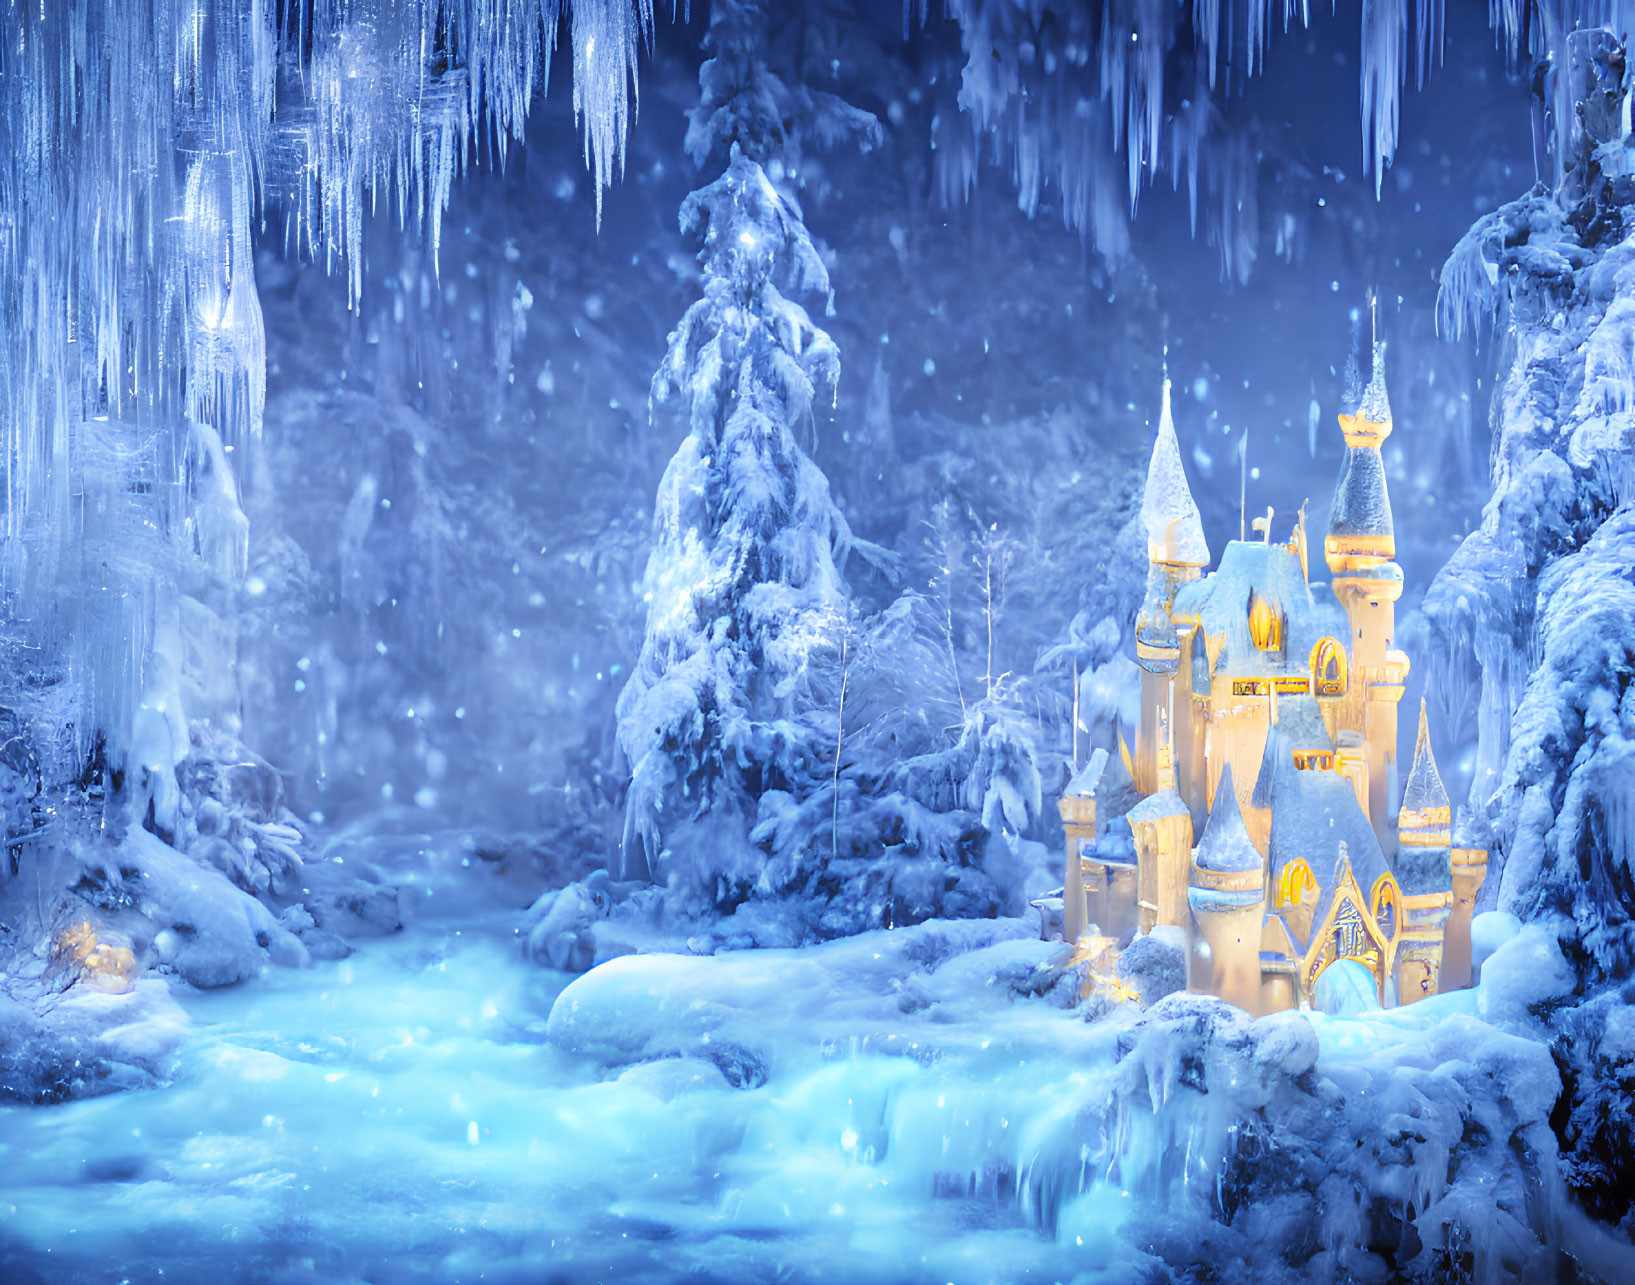 Snowy Fairy Tale Castle in Twilight Landscape